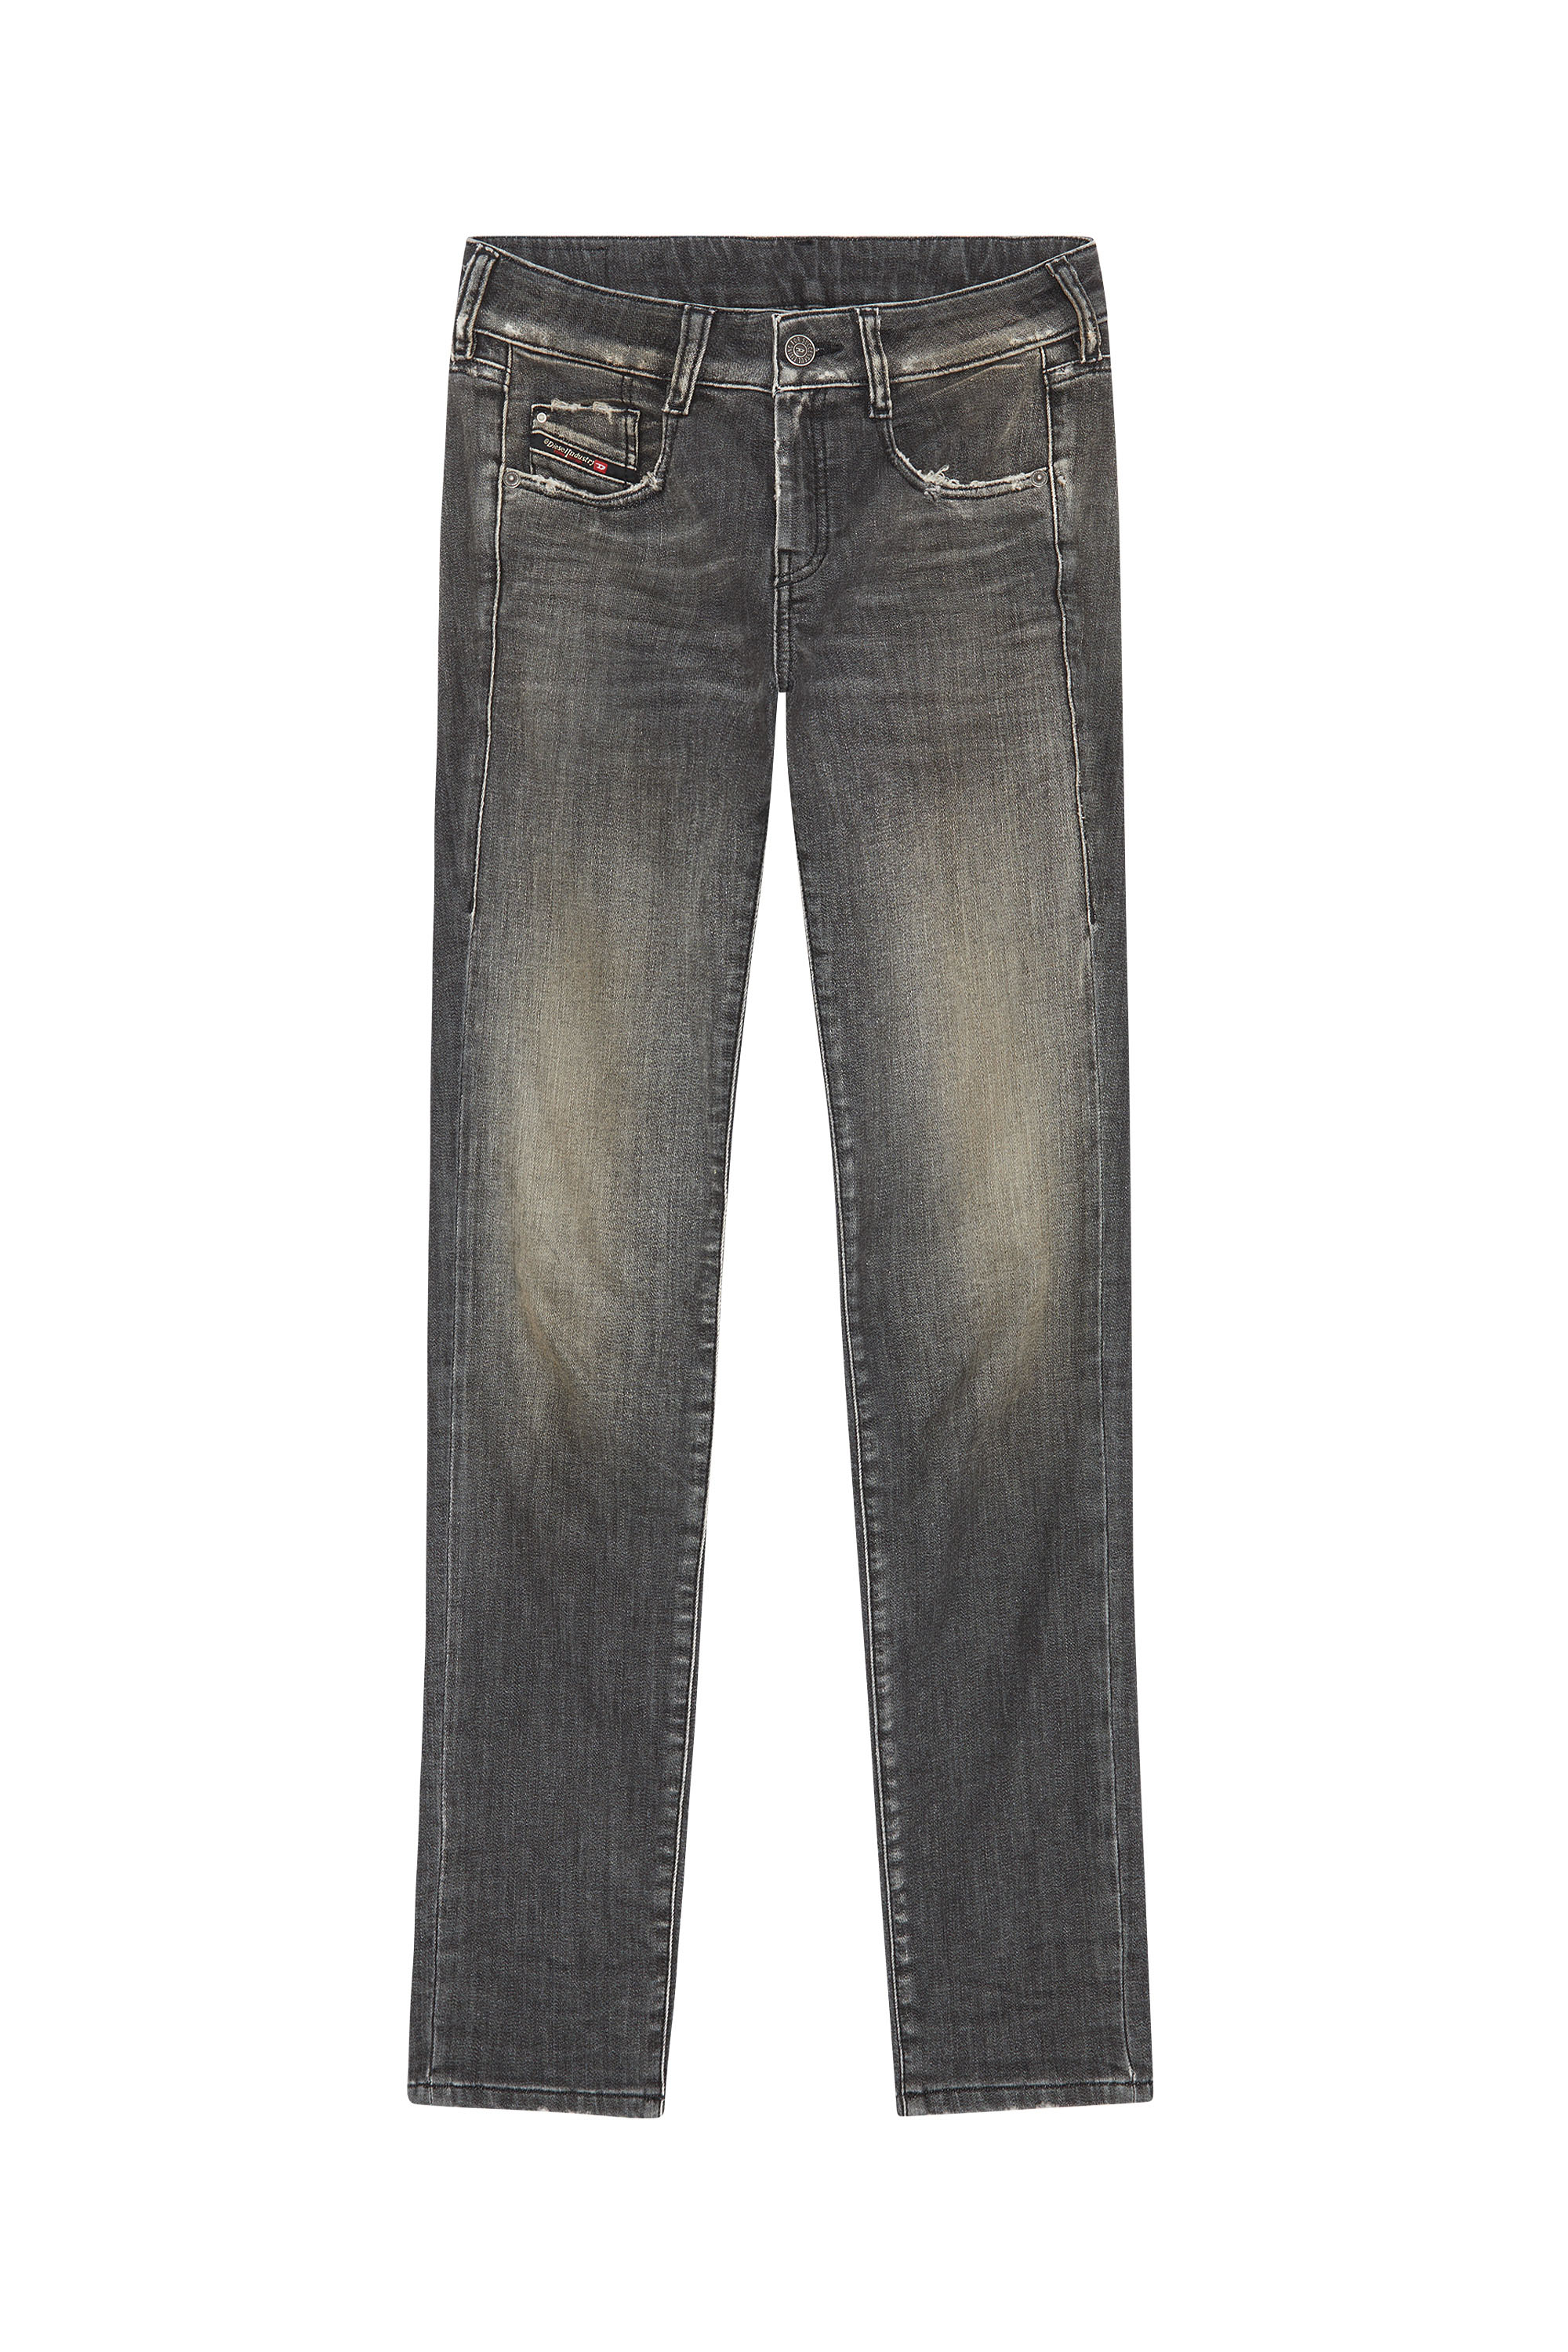 Diesel - Slim D-Ollies JoggJeans® 09F01, Black/Dark grey - Image 5